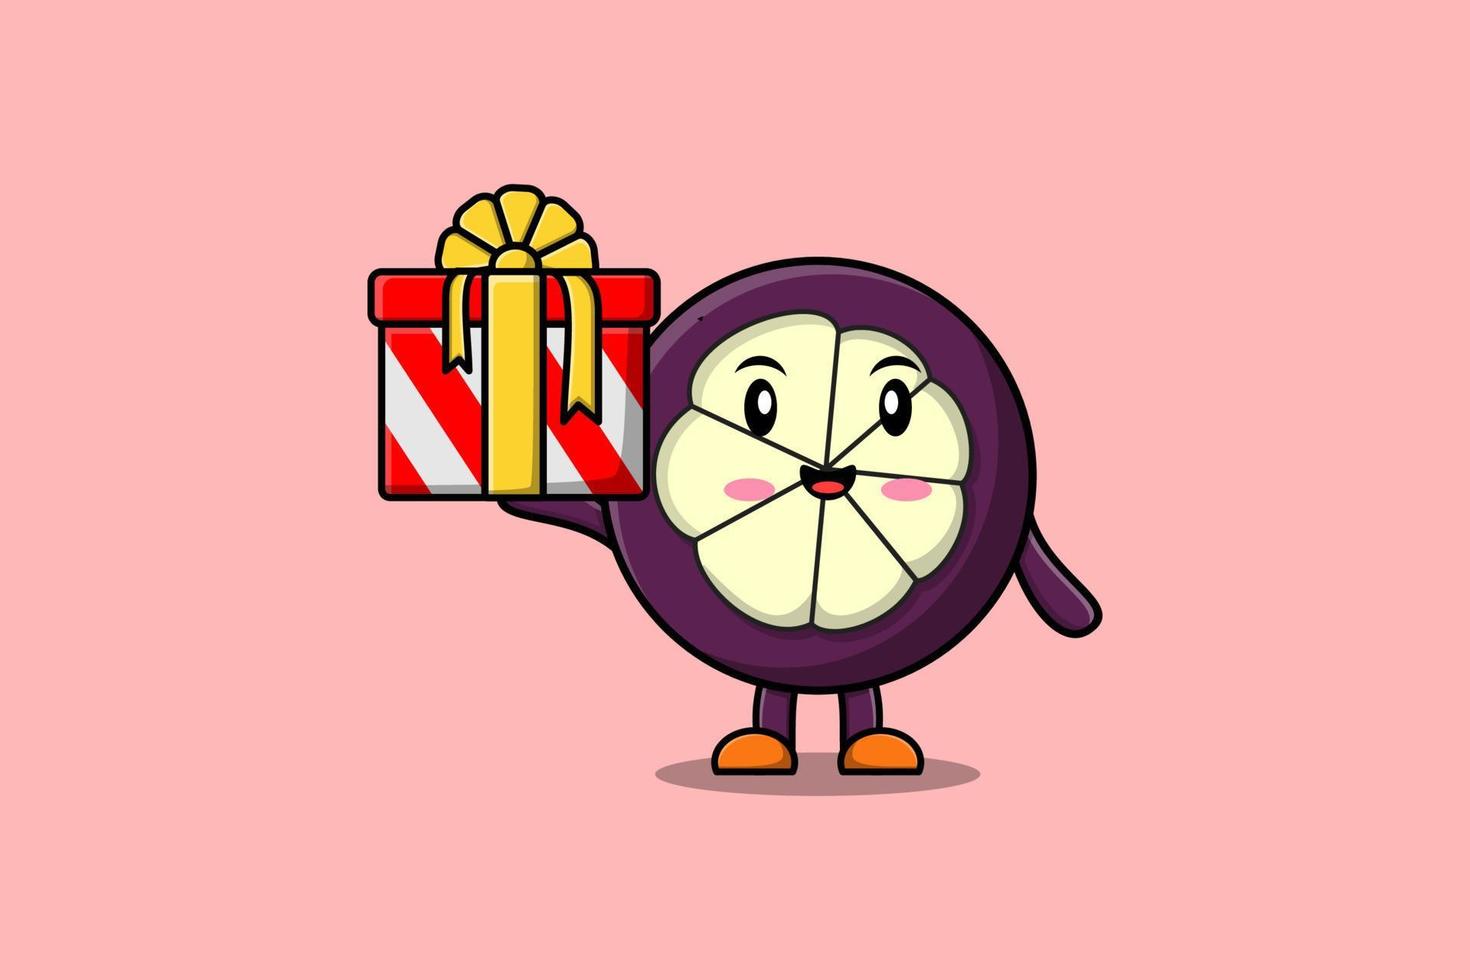 personagem de mangostão bonito dos desenhos animados segurando a caixa de presente vetor